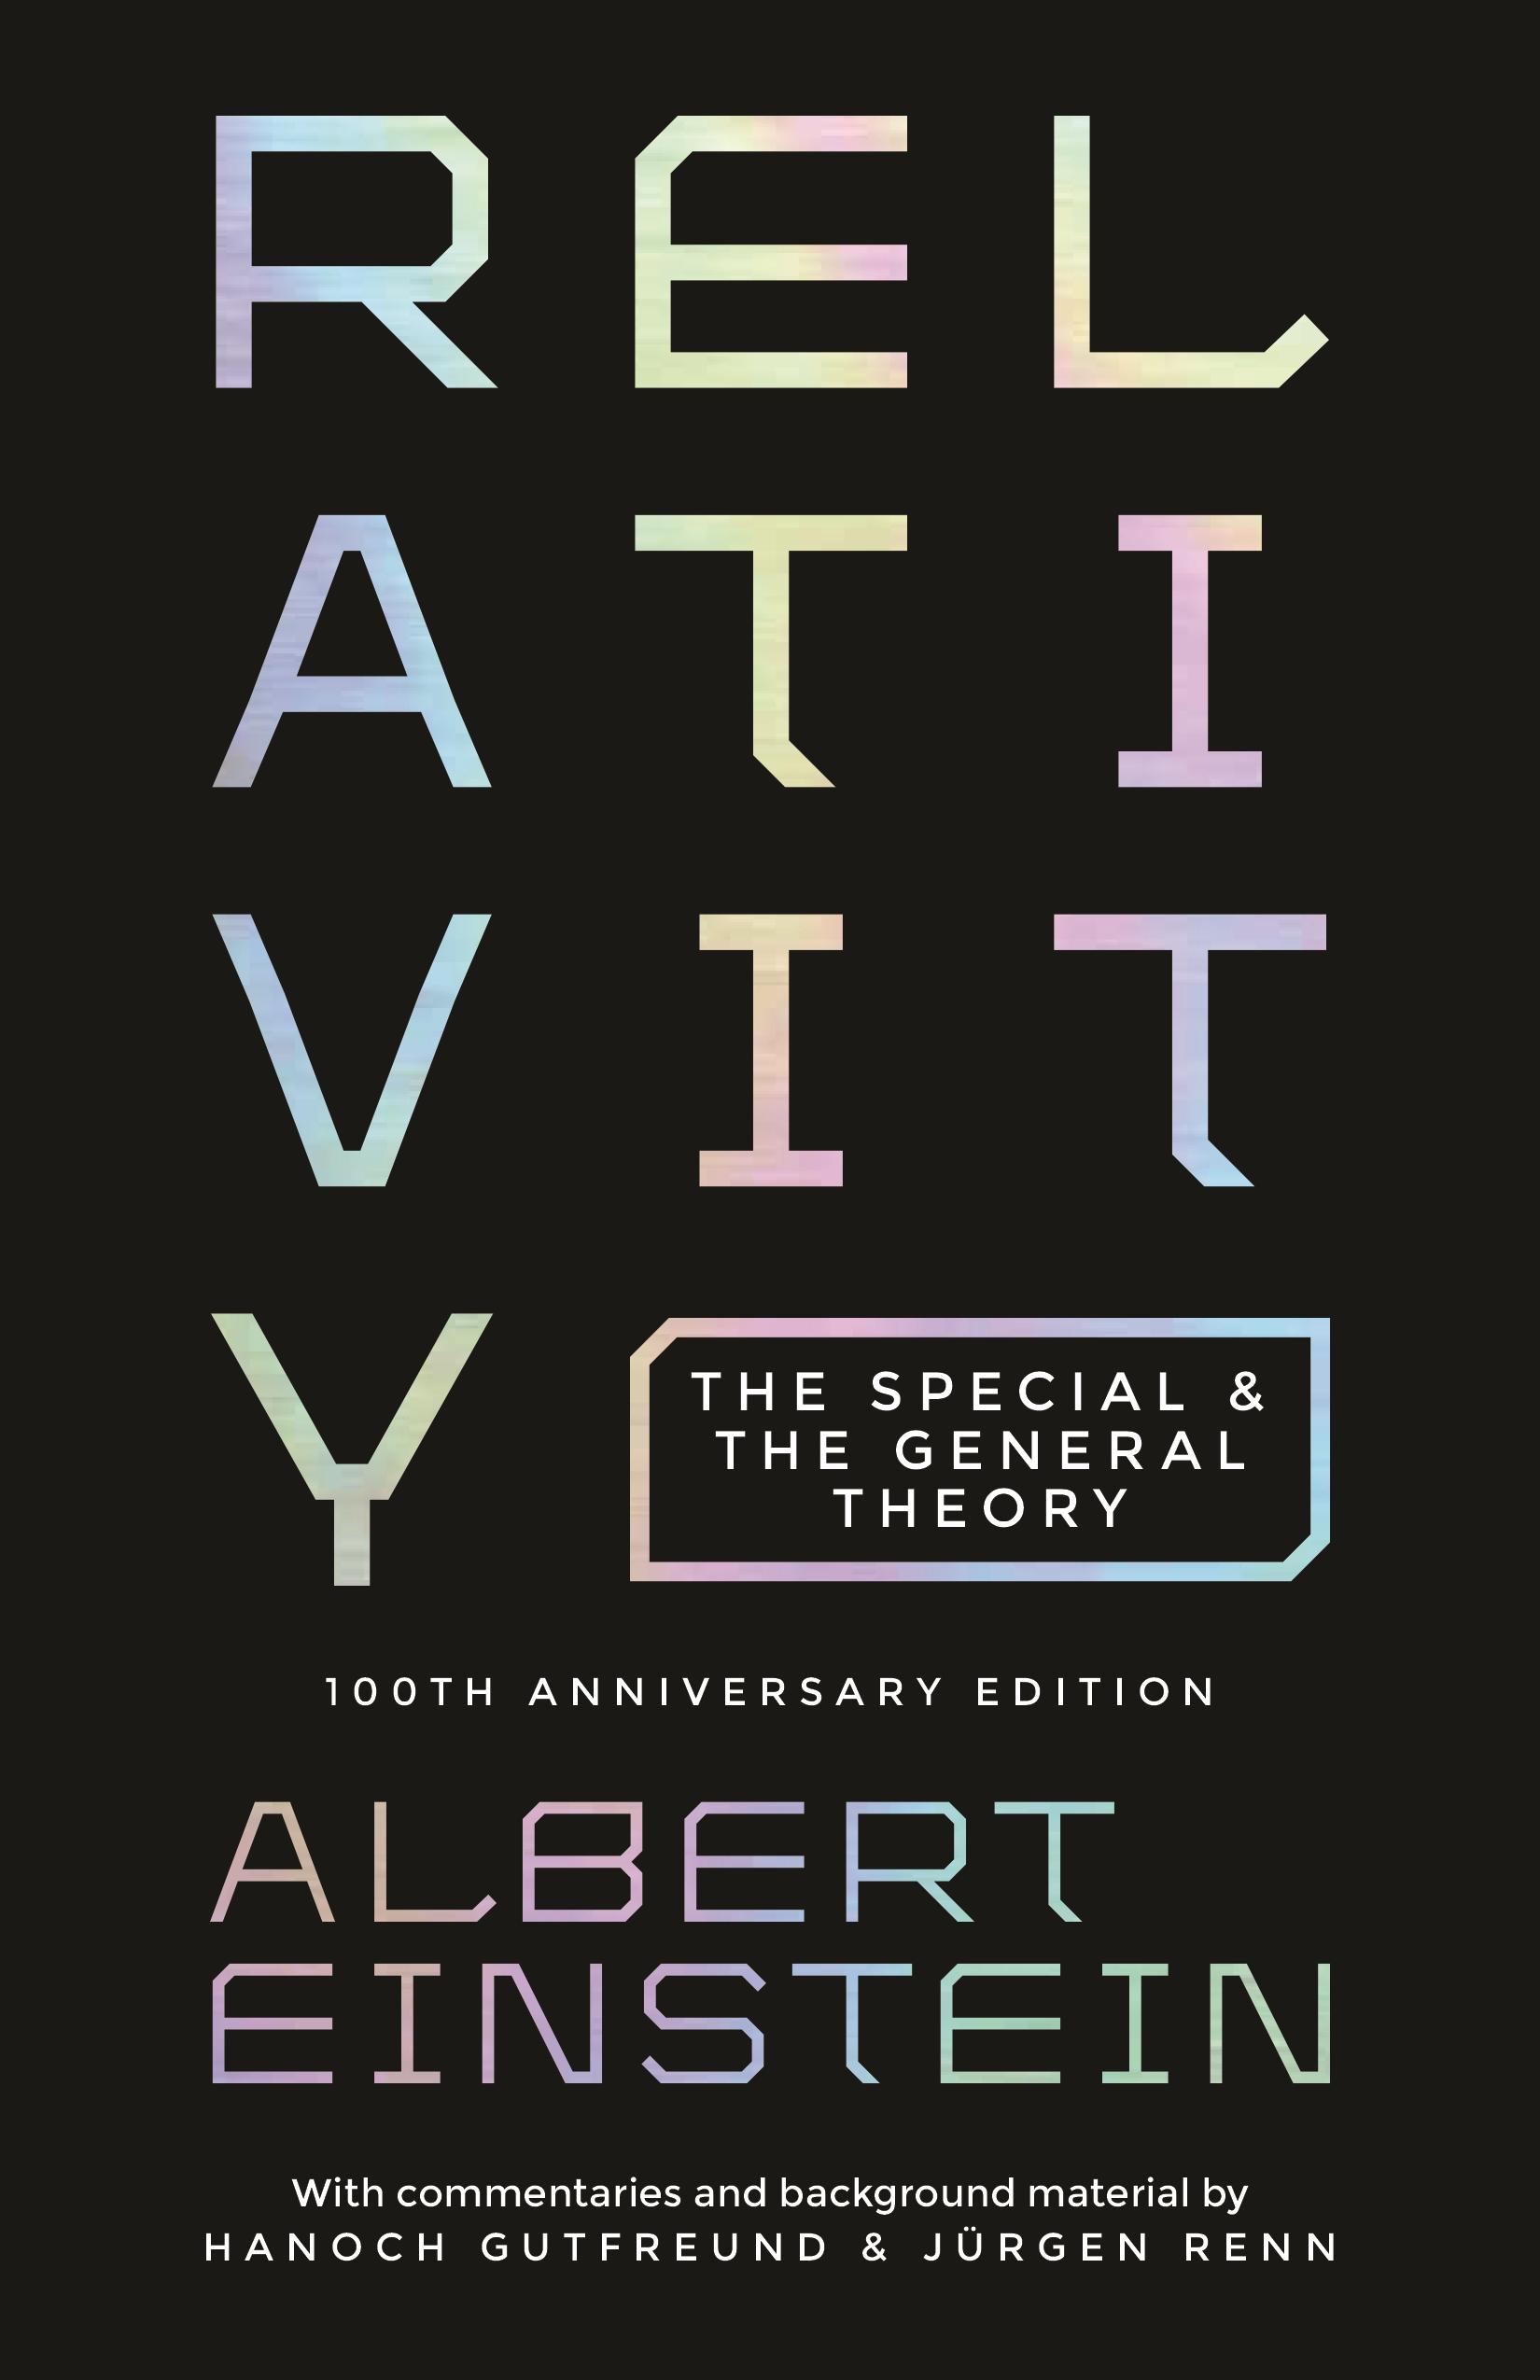 Relativity / The Special and the General Theory - 100th Anniversary Edition / Albert Einstein / Buch / Gebunden / Englisch / 2015 / Princeton University Press / EAN 9780691166339 - Einstein, Albert